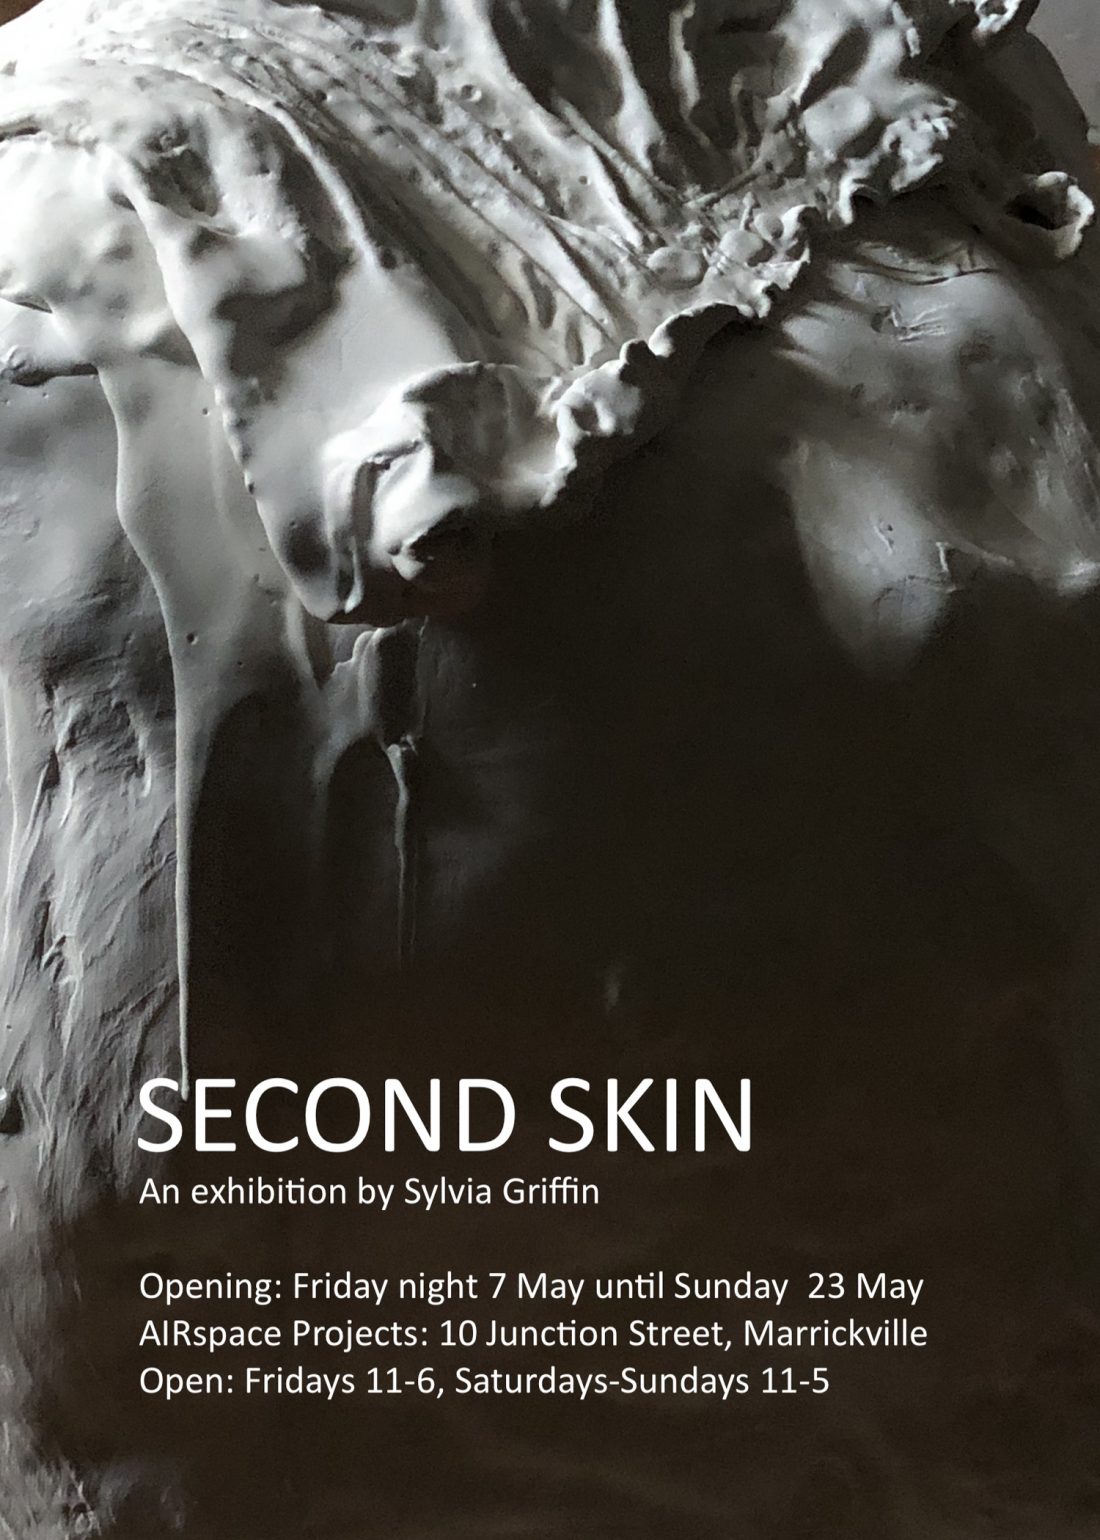 Second Skin invitation